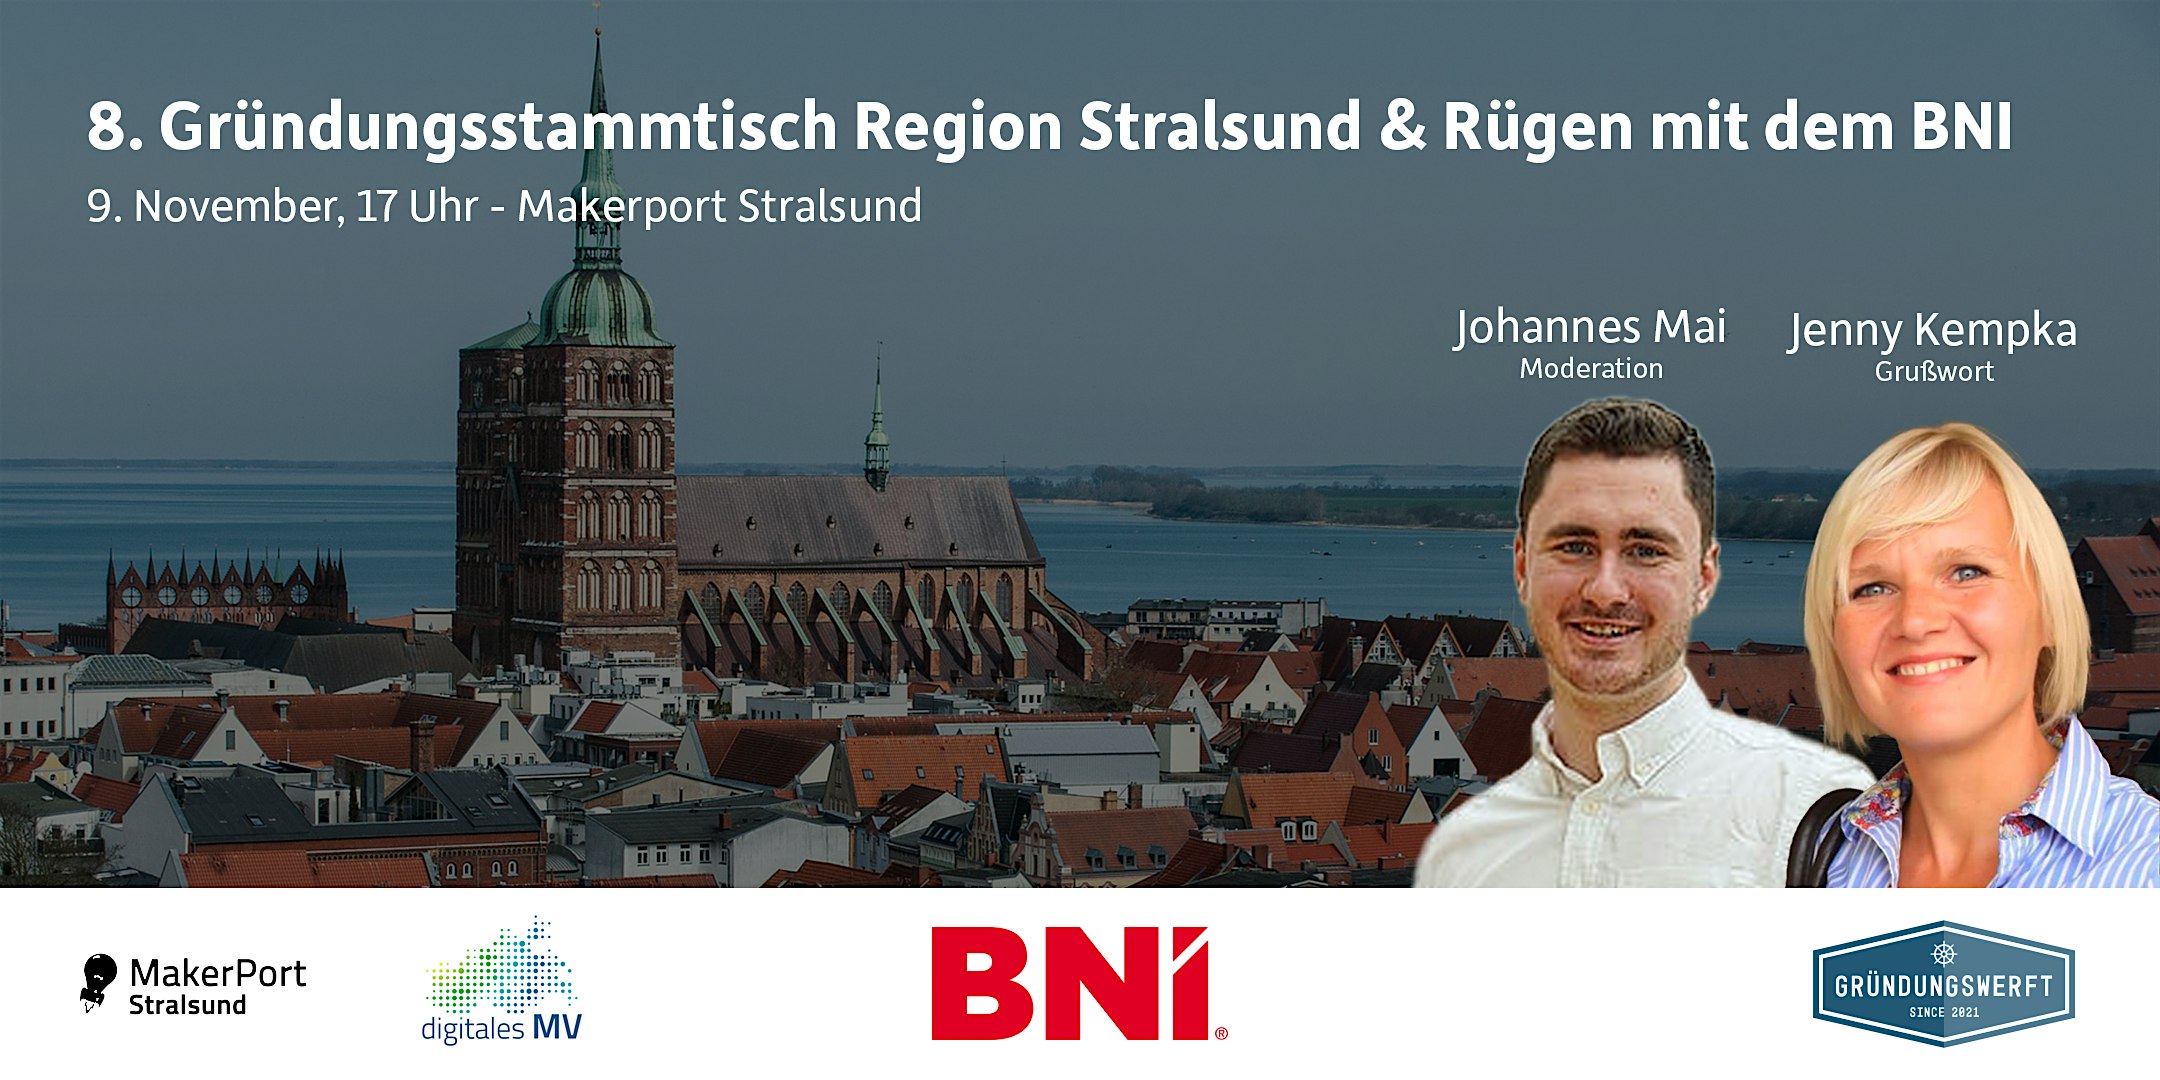 Veranstaltungsbild für die Veranstaltung 8. Gründungsstammtisch Stralsund & Rügen